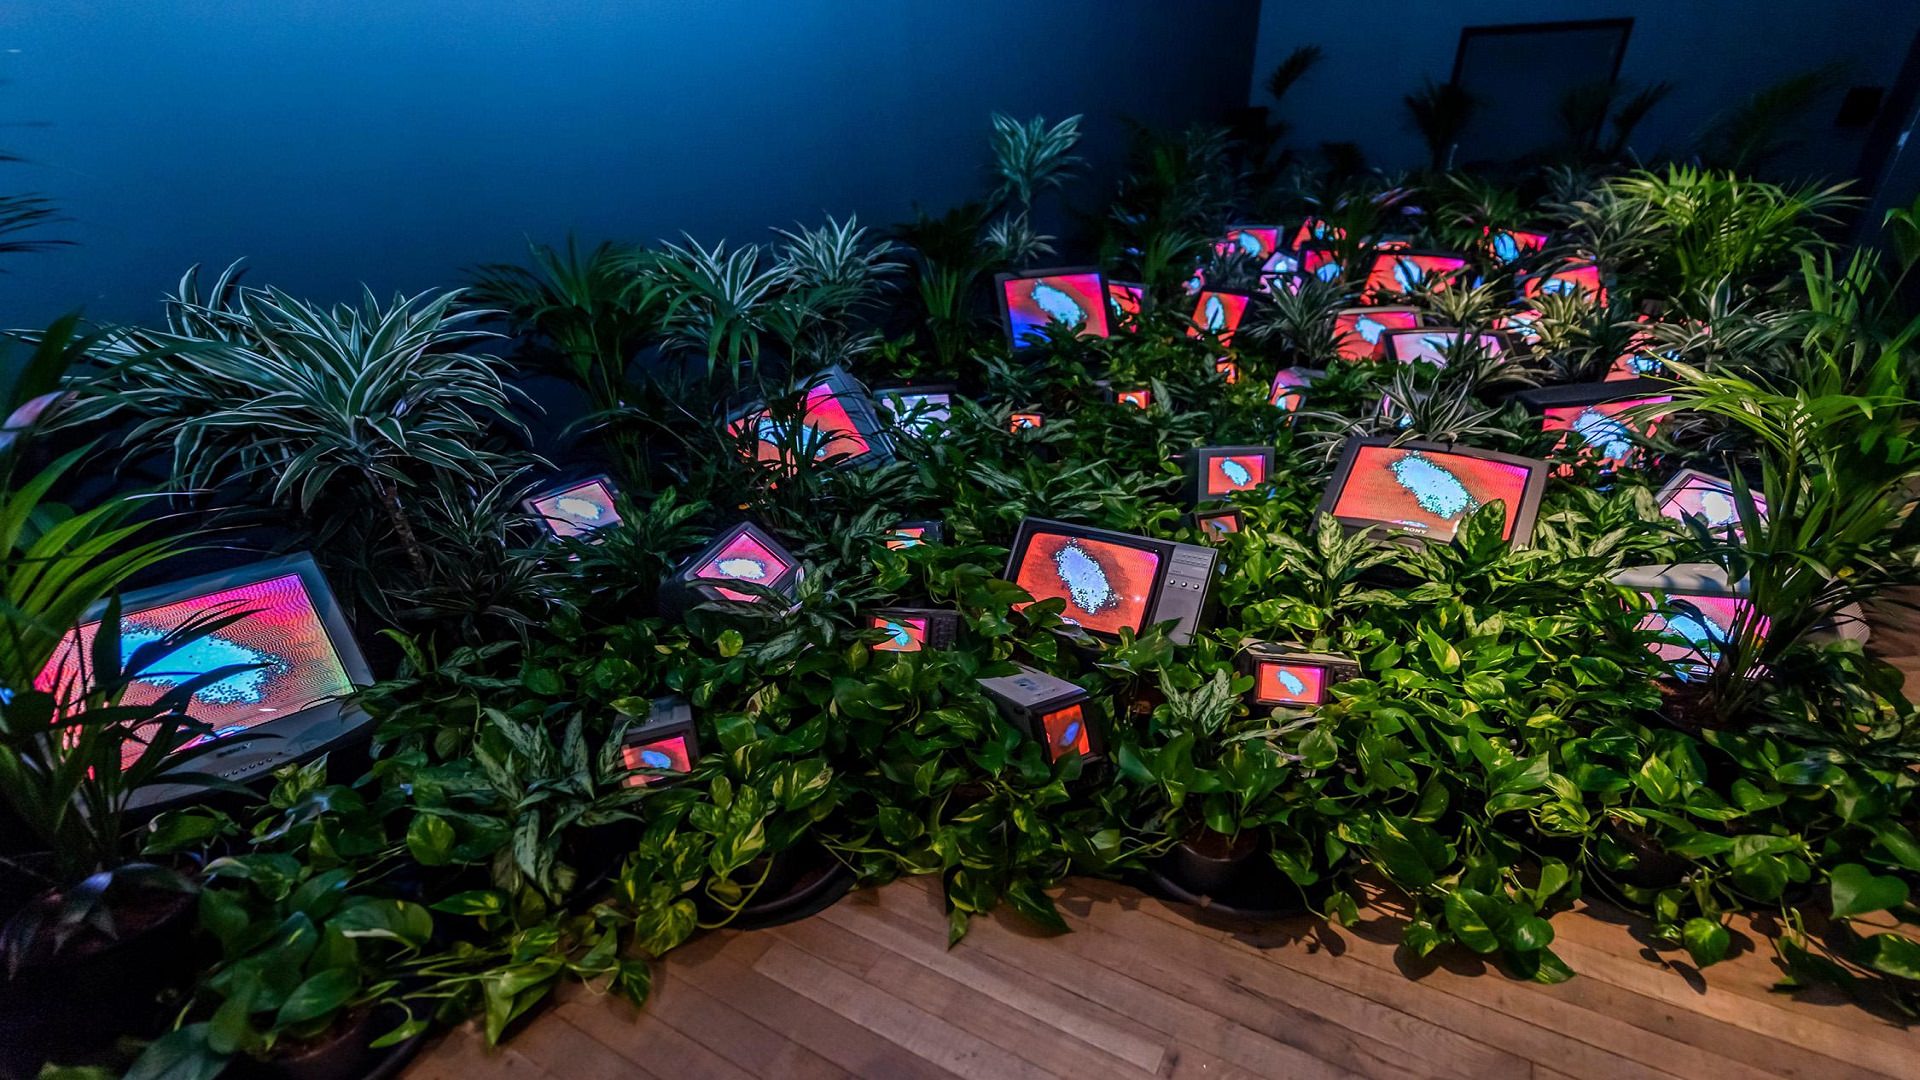 چیدمان هنر نو رسانه ای اثر نام جون پاک : تلویزیون ها در باغچه سبز از گیاه آپارتمانی